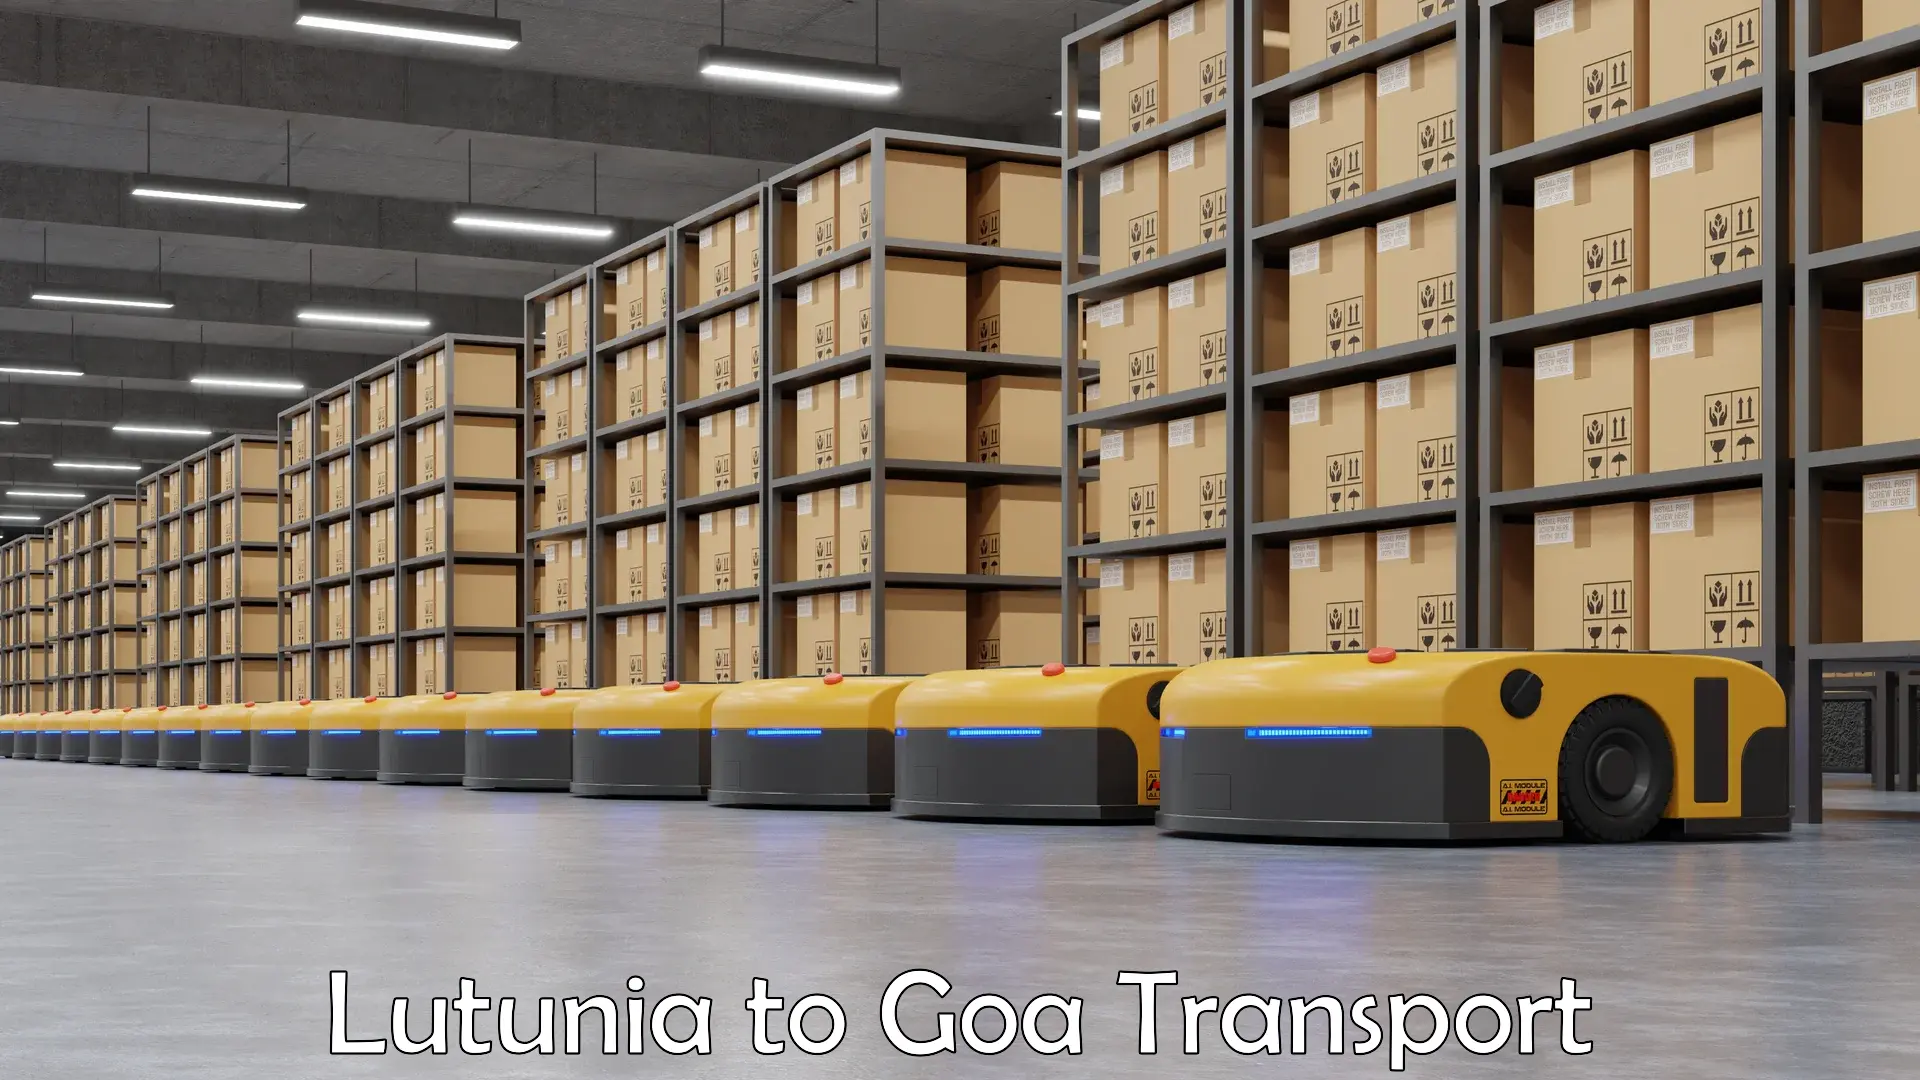 Commercial transport service Lutunia to Mormugao Port